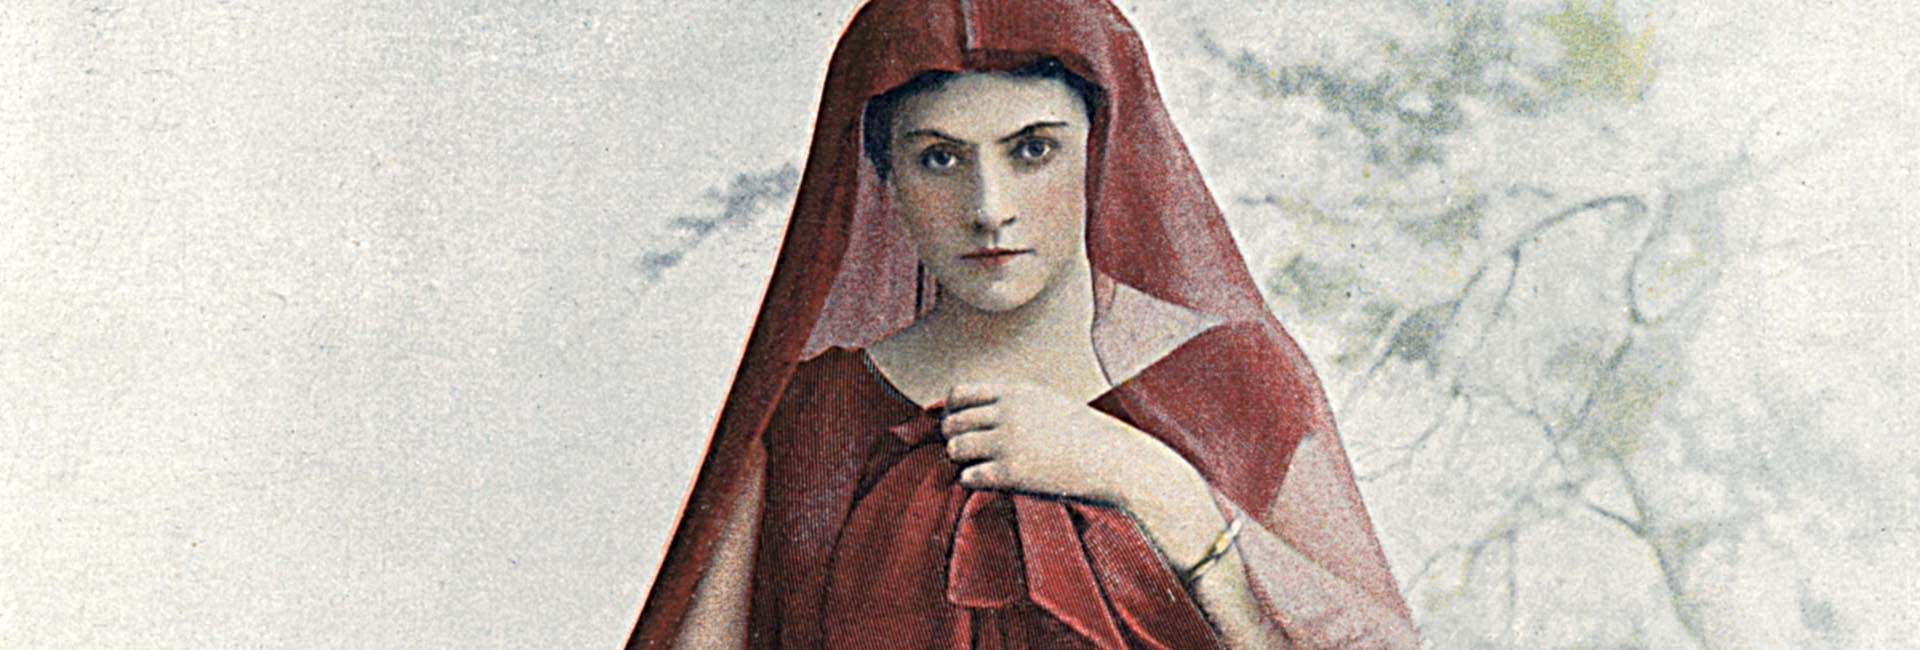 Antikes Bild von Frau in schicker kleidung